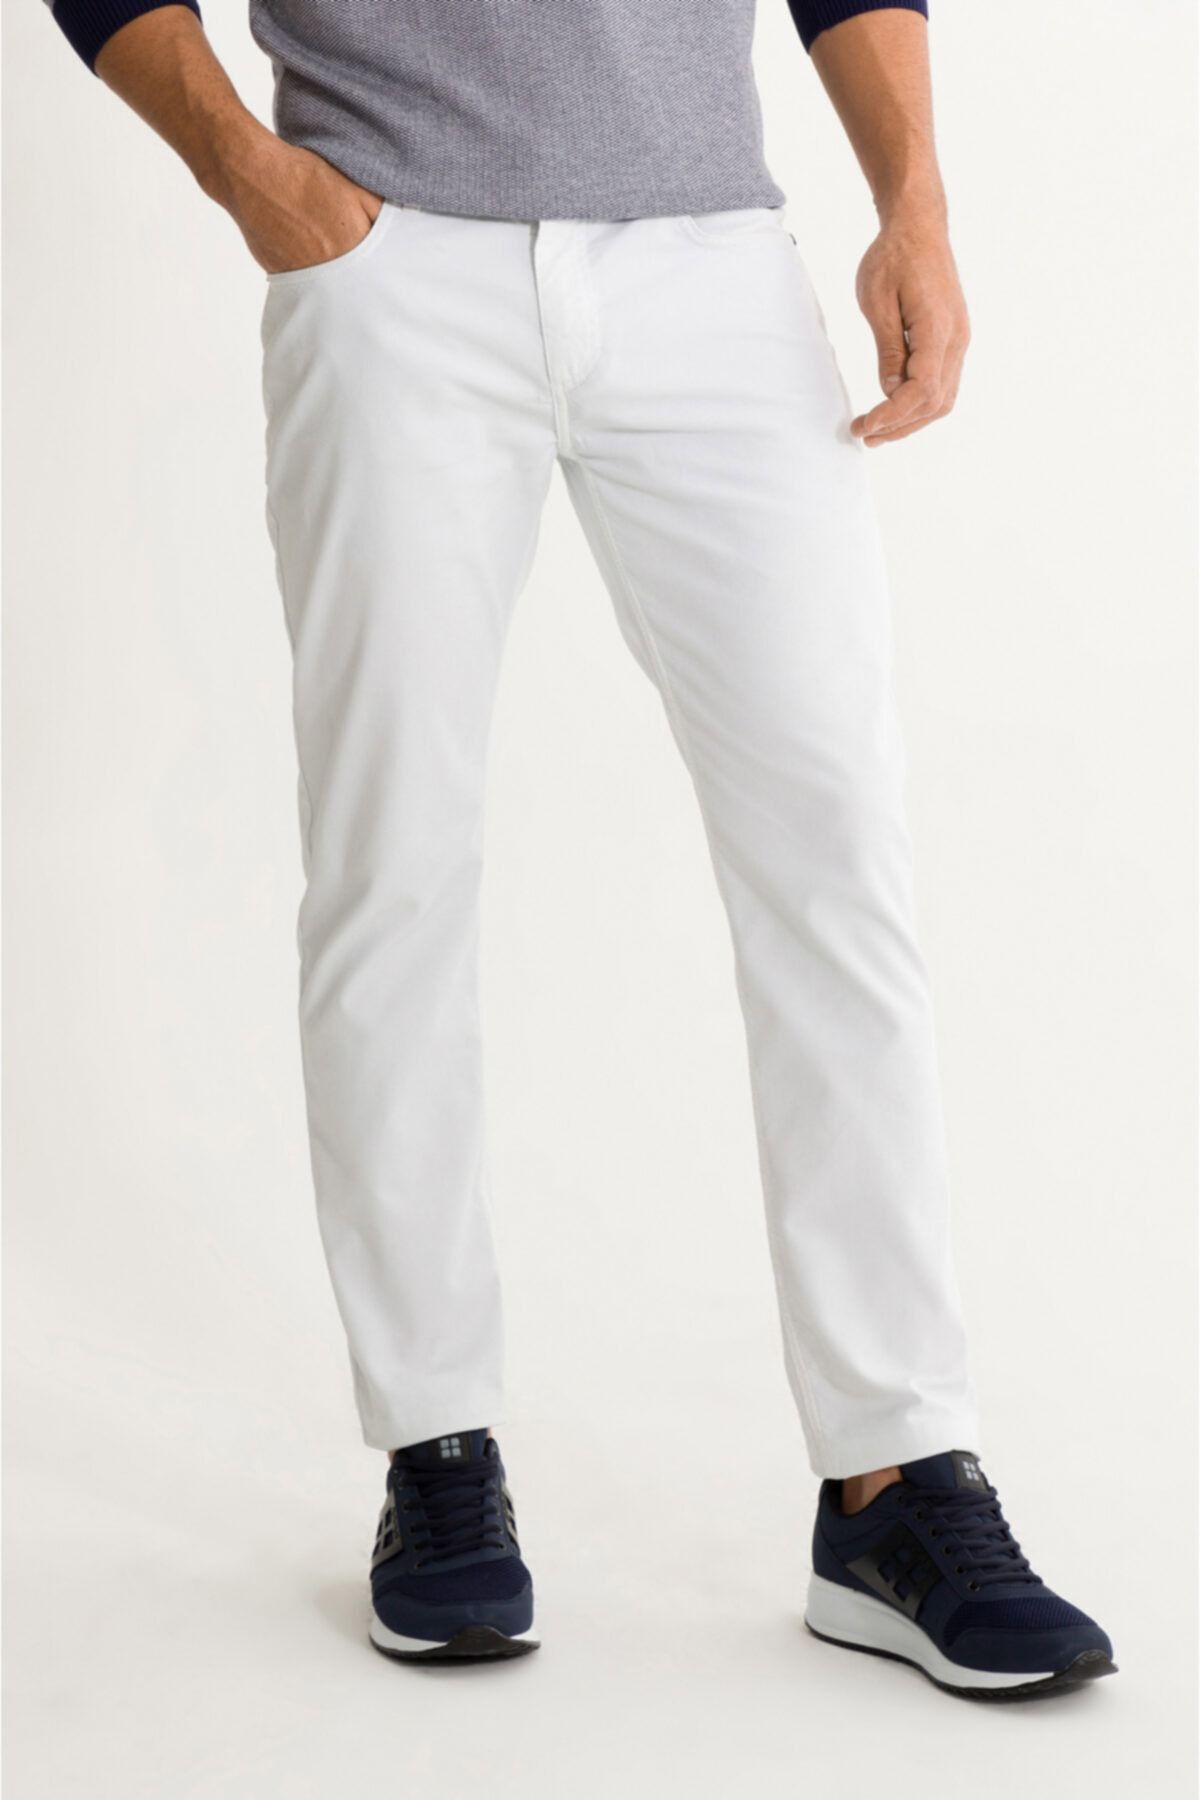 Avva Erkek Beyaz 5 Cepli Armürlü Slim Fit Pantolon A01s3076